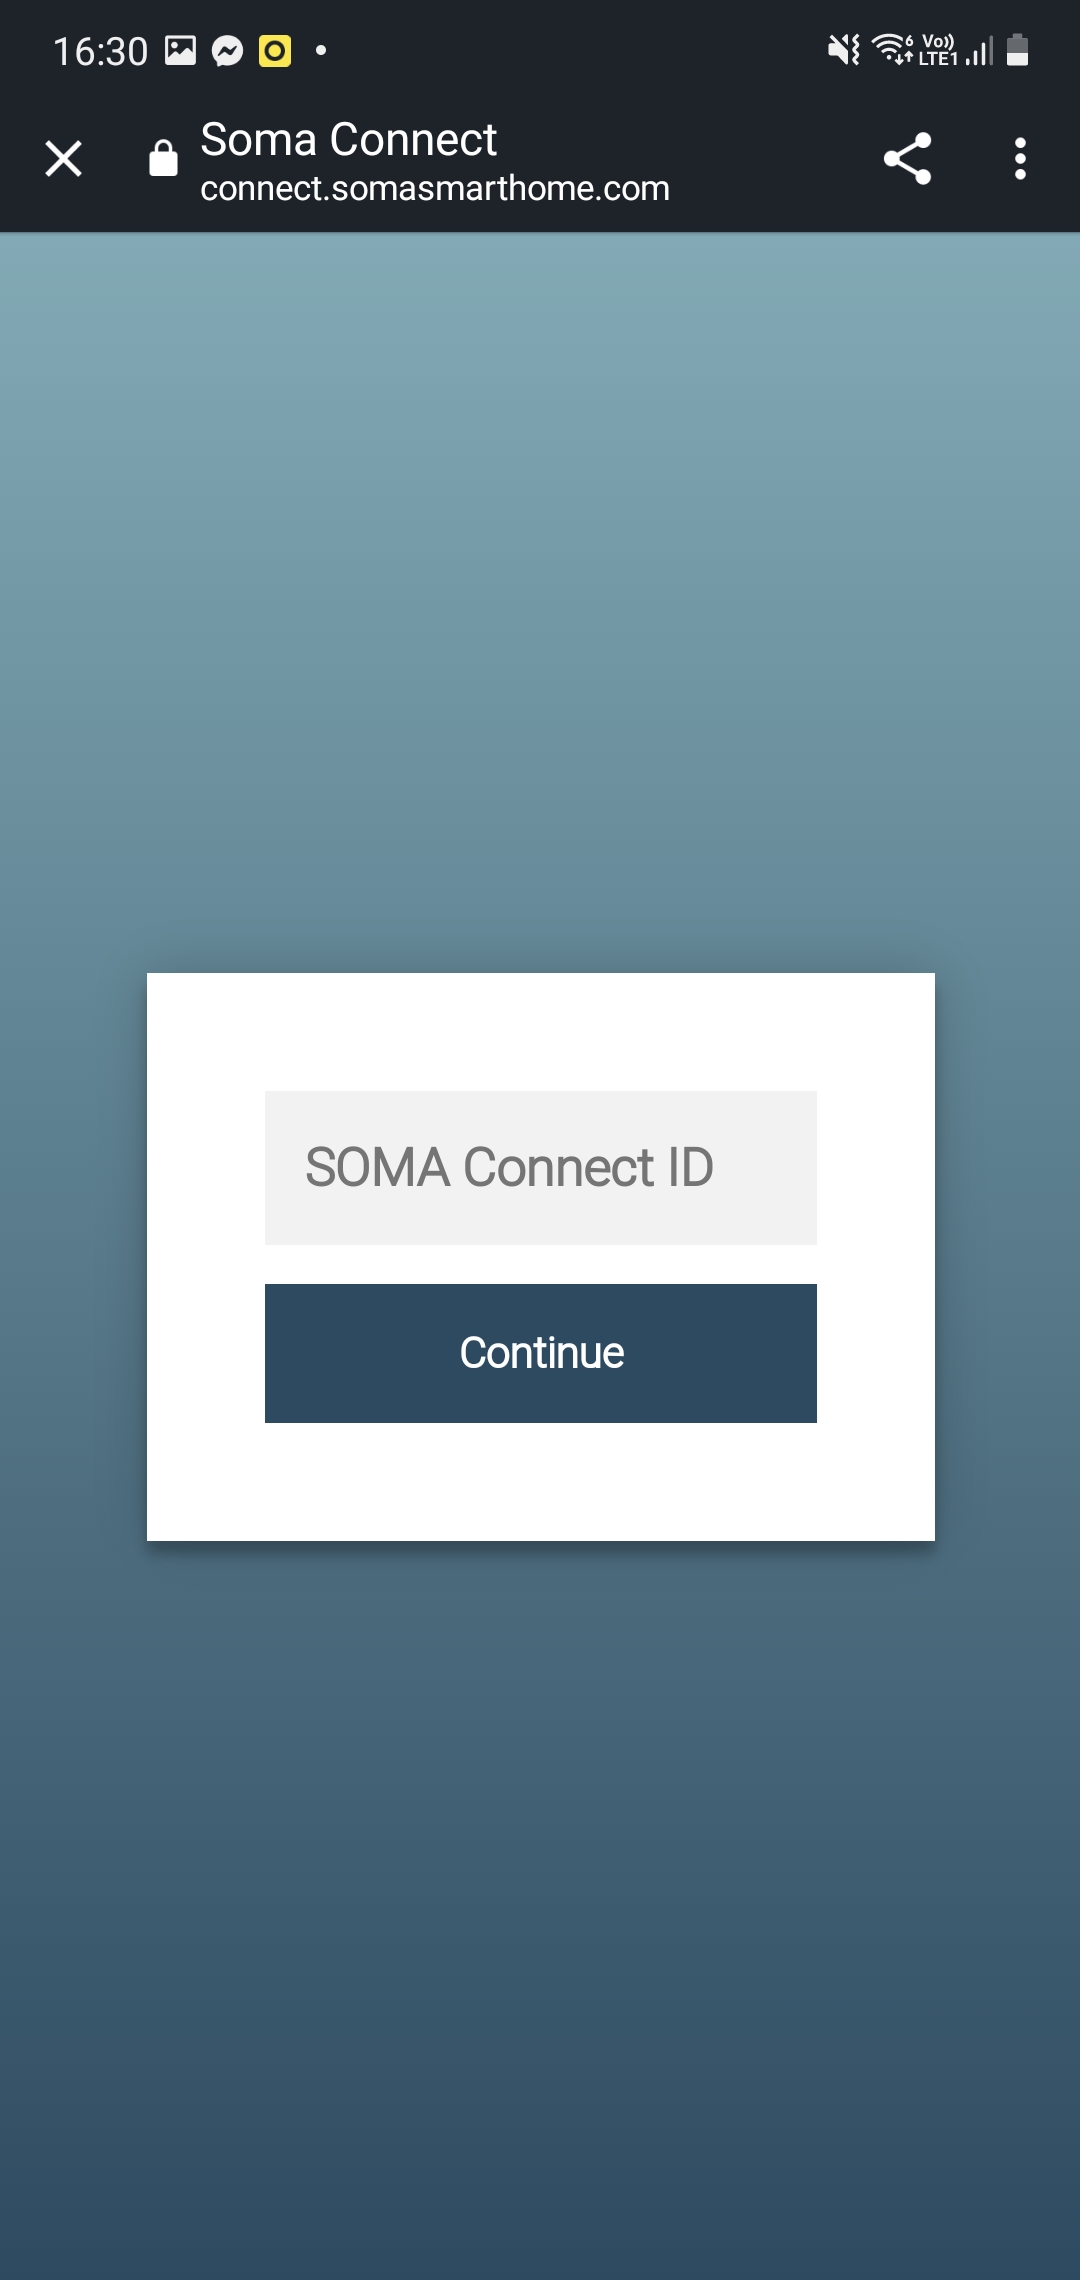 Recenzja silnika do rolet Soma Smart Shades 2 wraz z bramką Soma Connect